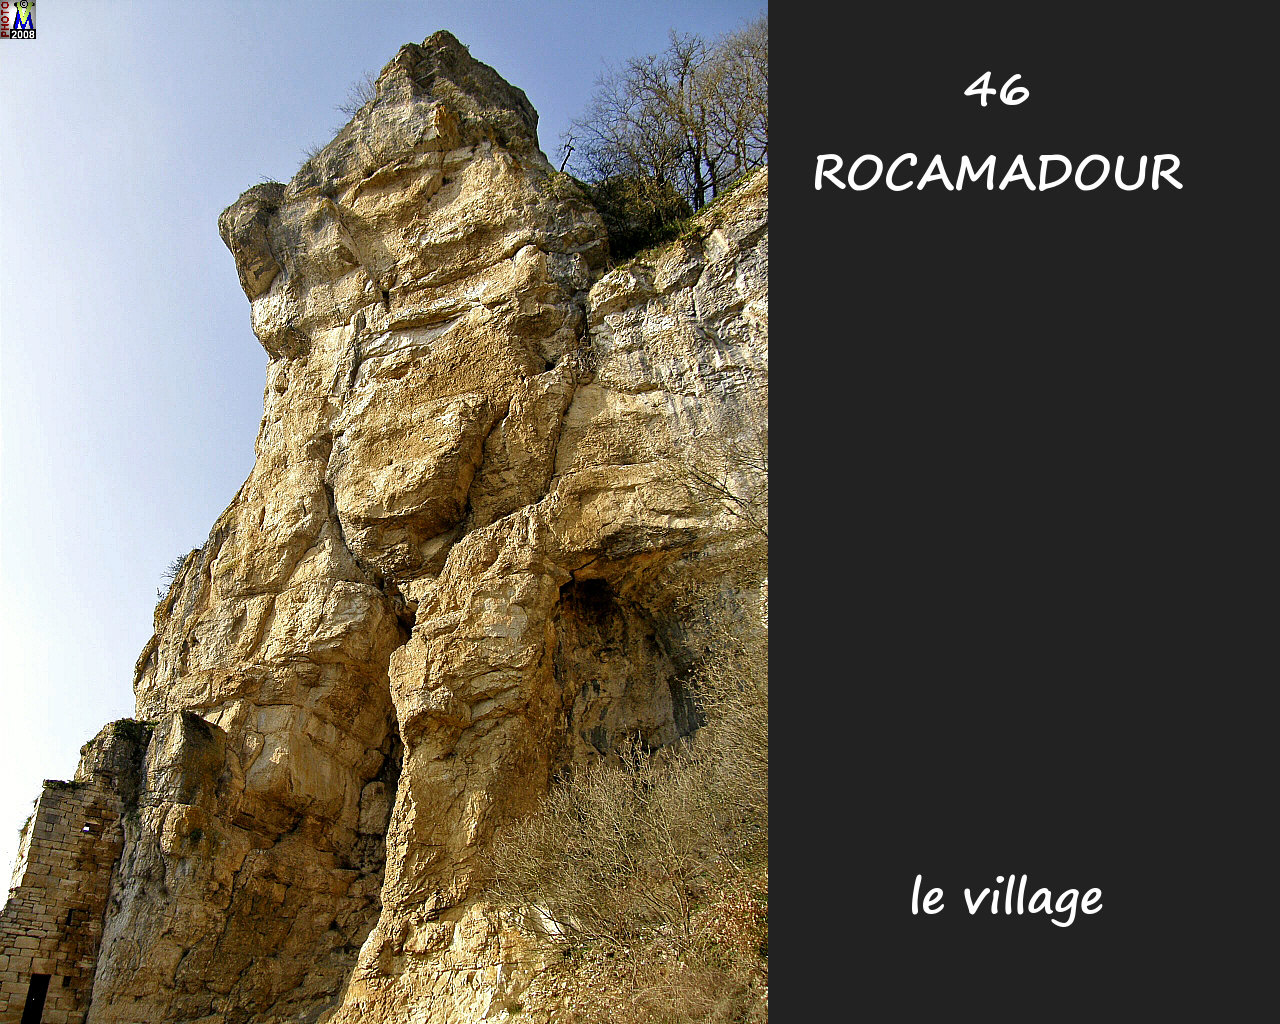 46ROCAMADOUR_village_164.jpg